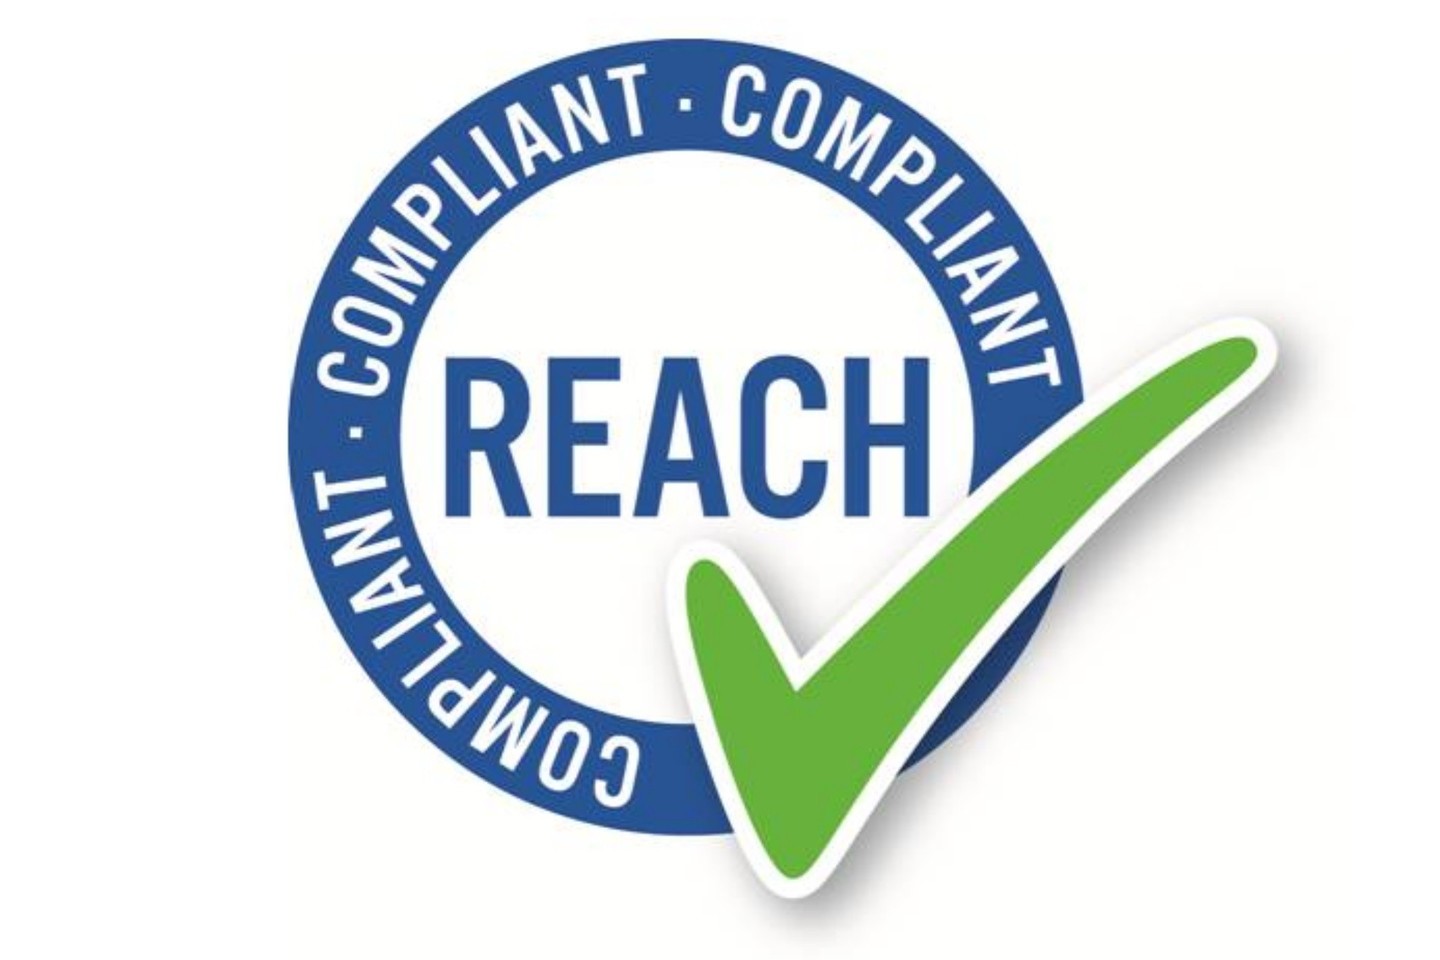 REACH ženklas rodo, kad produkto gamyboje laikomasi atitinkamų cheminių medžiagų naudojimo taisyklių.